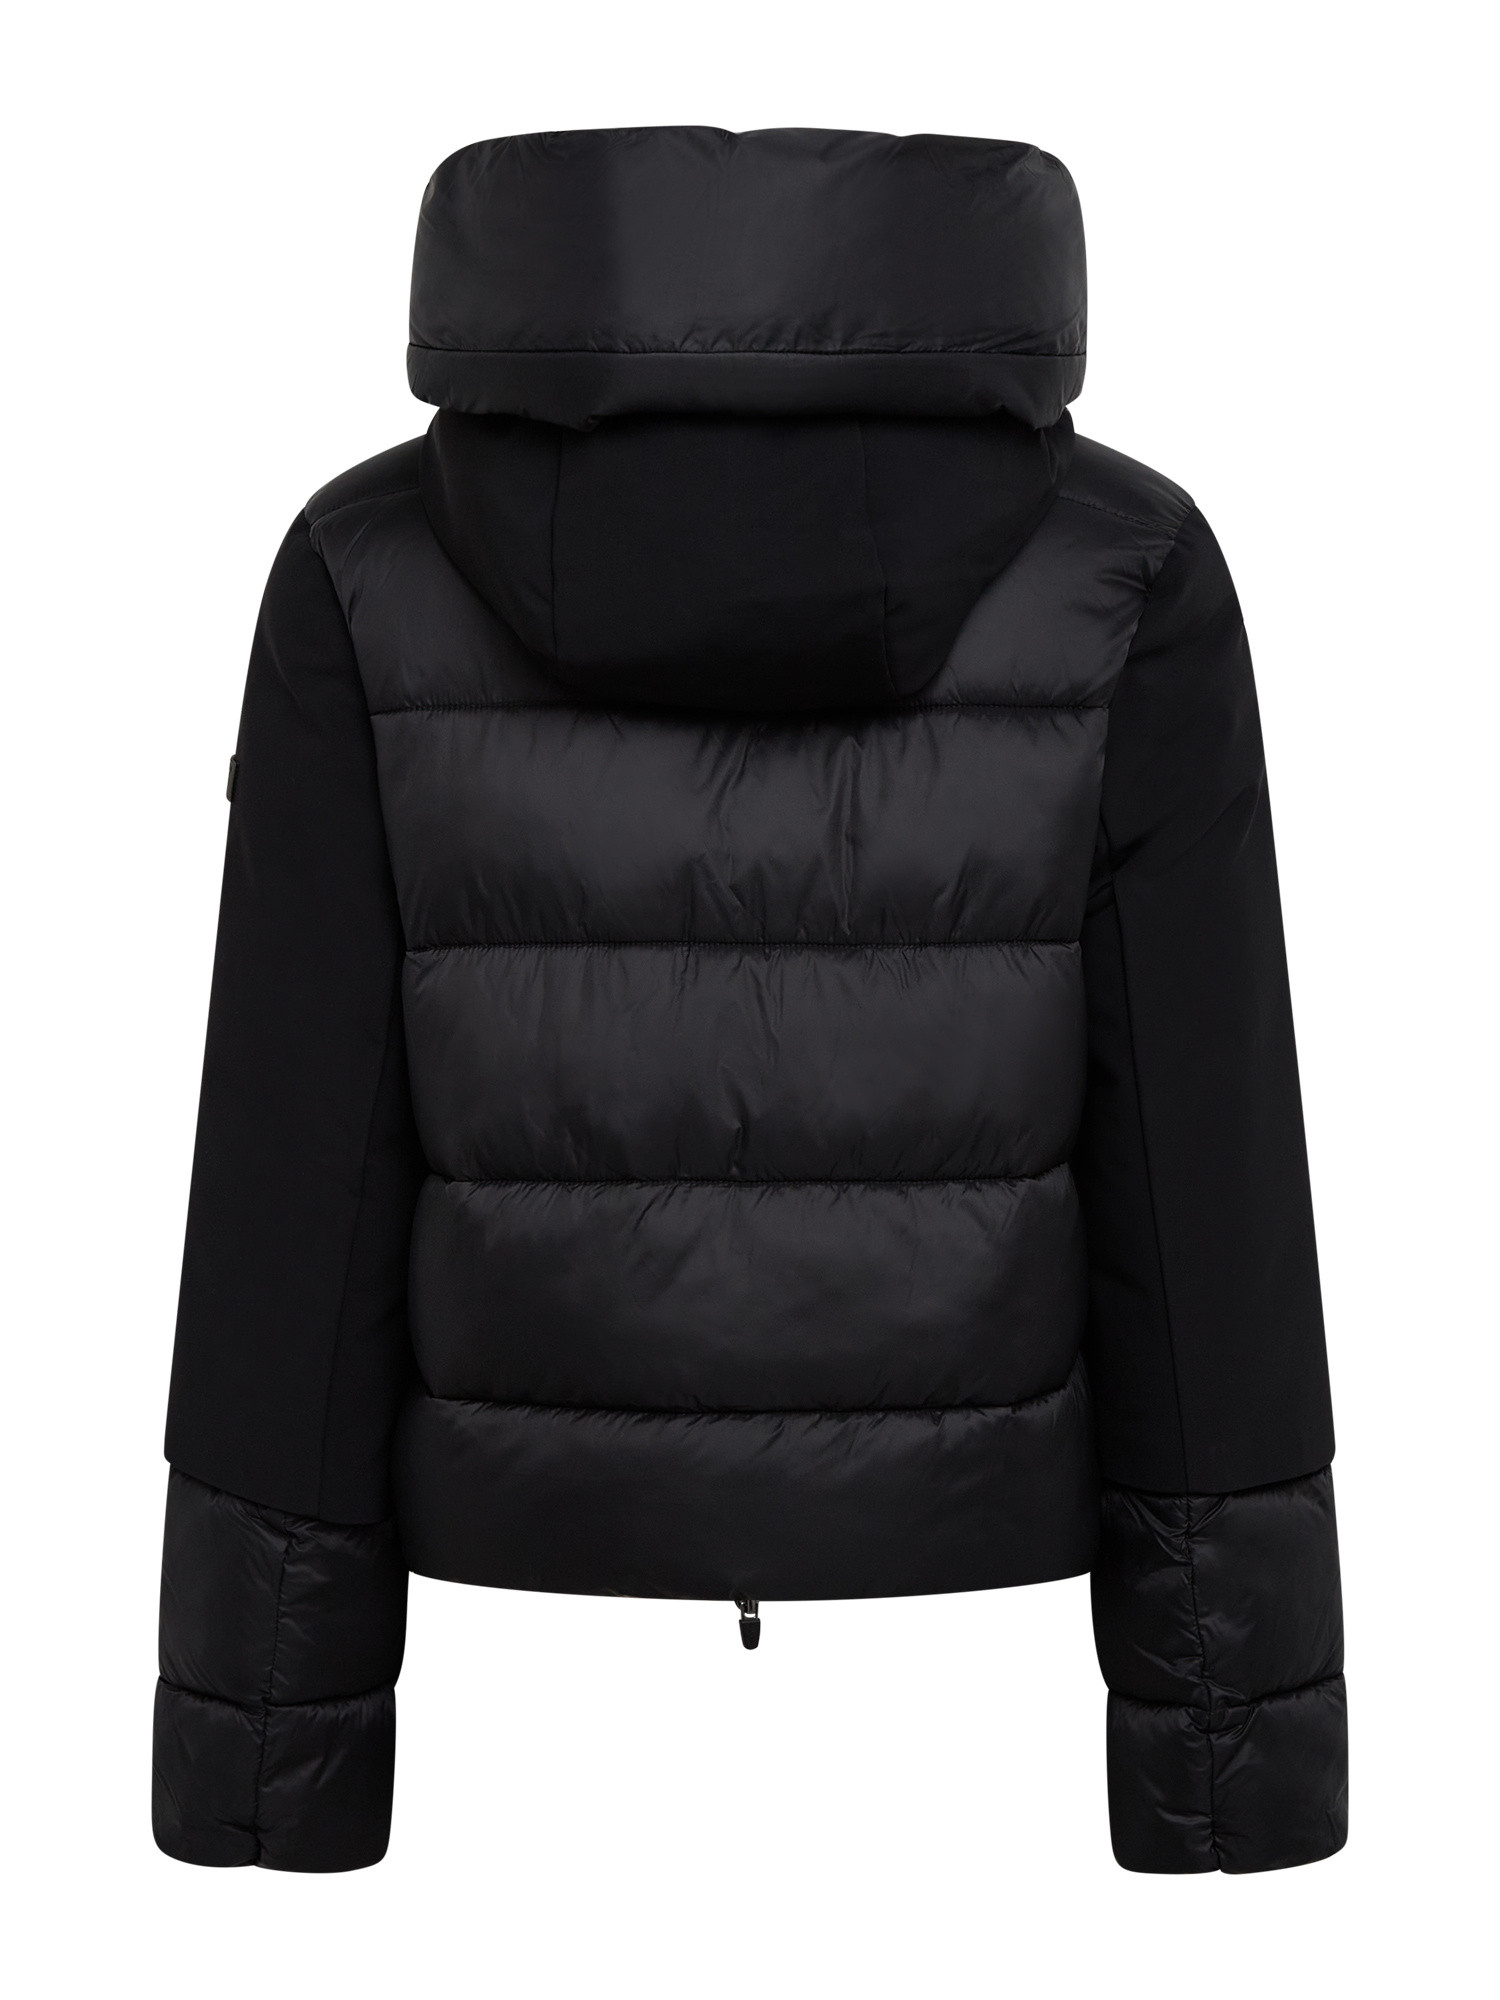 Canadian - Becancour short jacket, Black, large image number 1